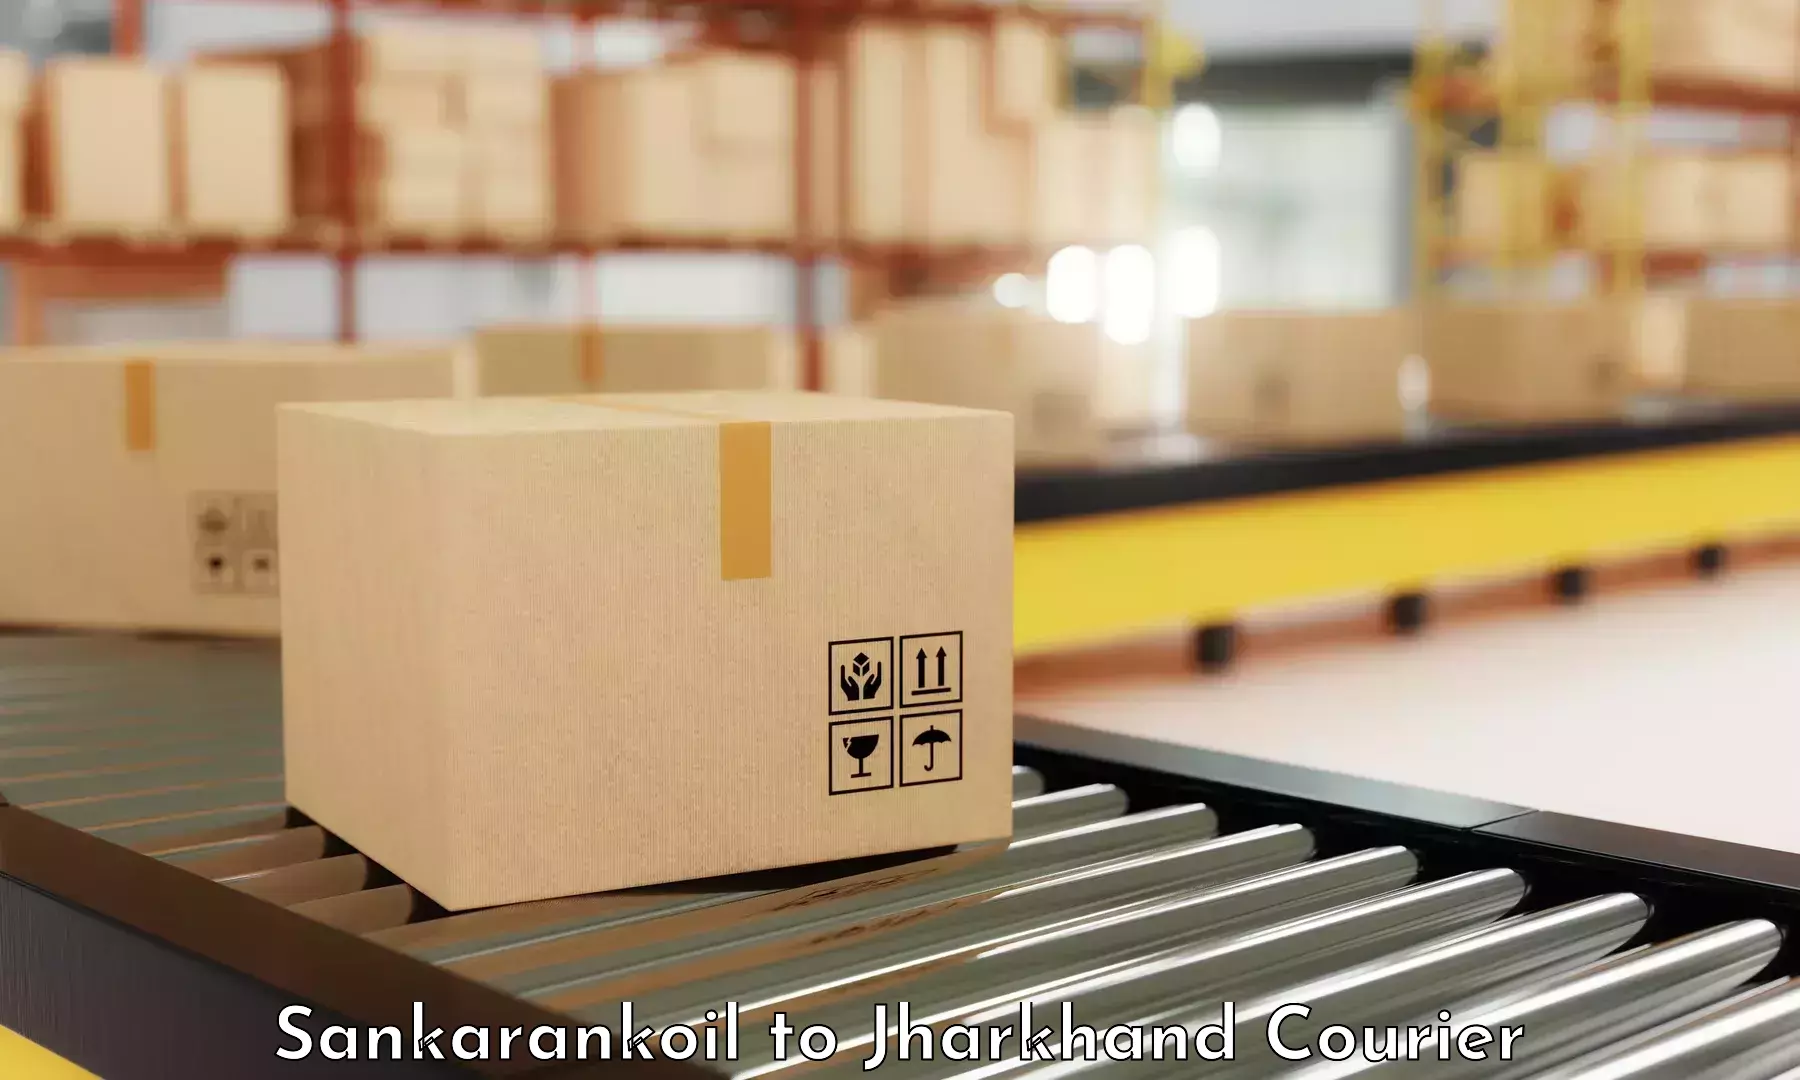 Customer-centric shipping in Sankarankoil to Ranka Garhwa